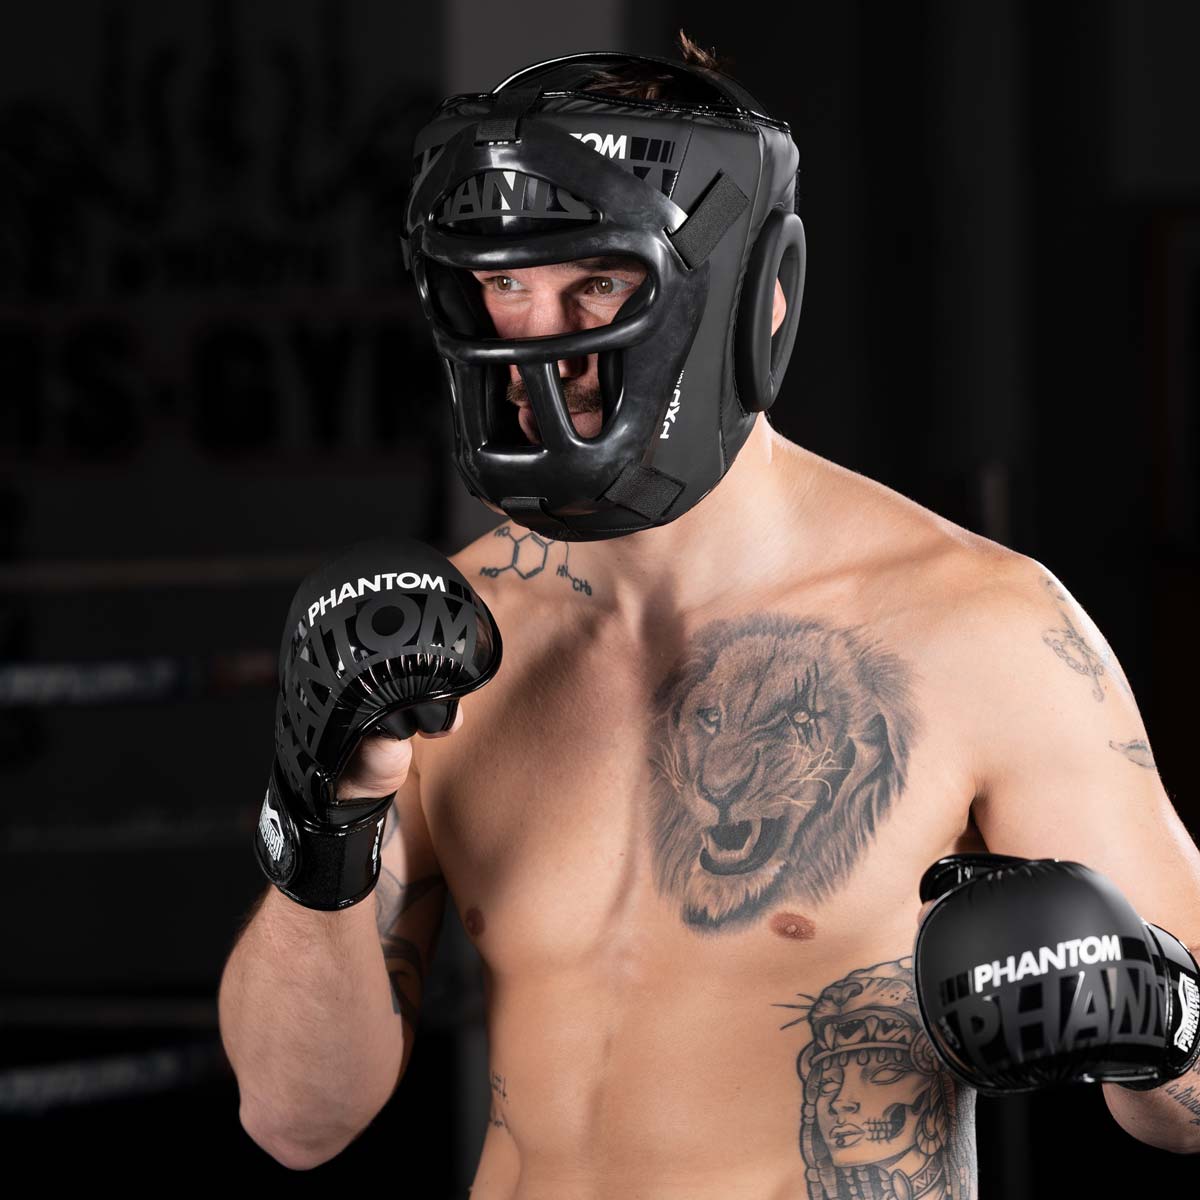 Muay Thai Profi im Training mit dem Phantom Cage Kopfschutz und den APEX MMA Sparringshandschuhen